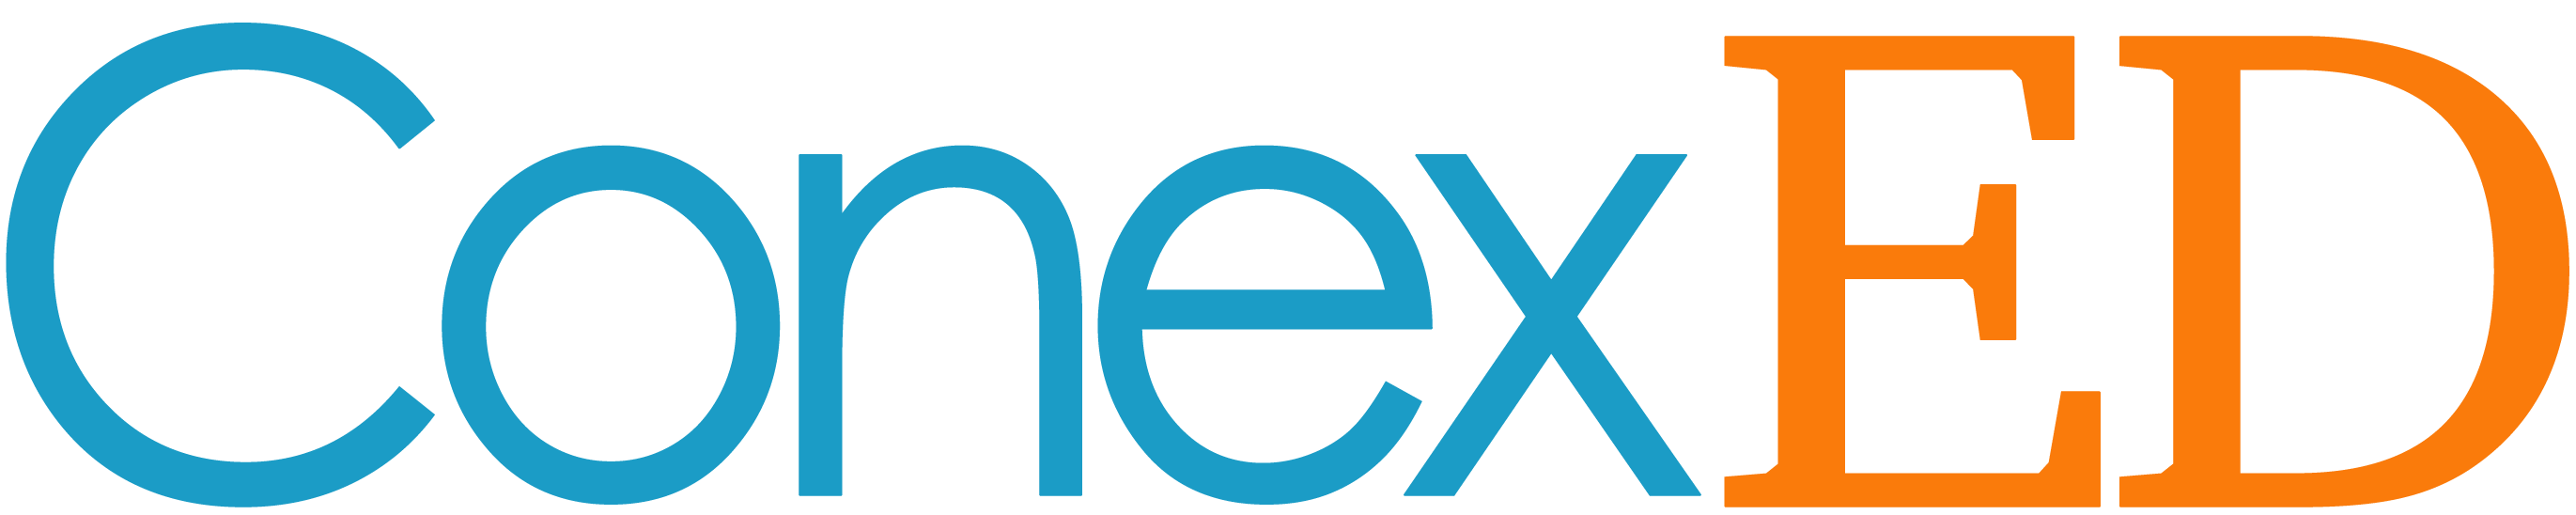 ConexED - Logo-no background